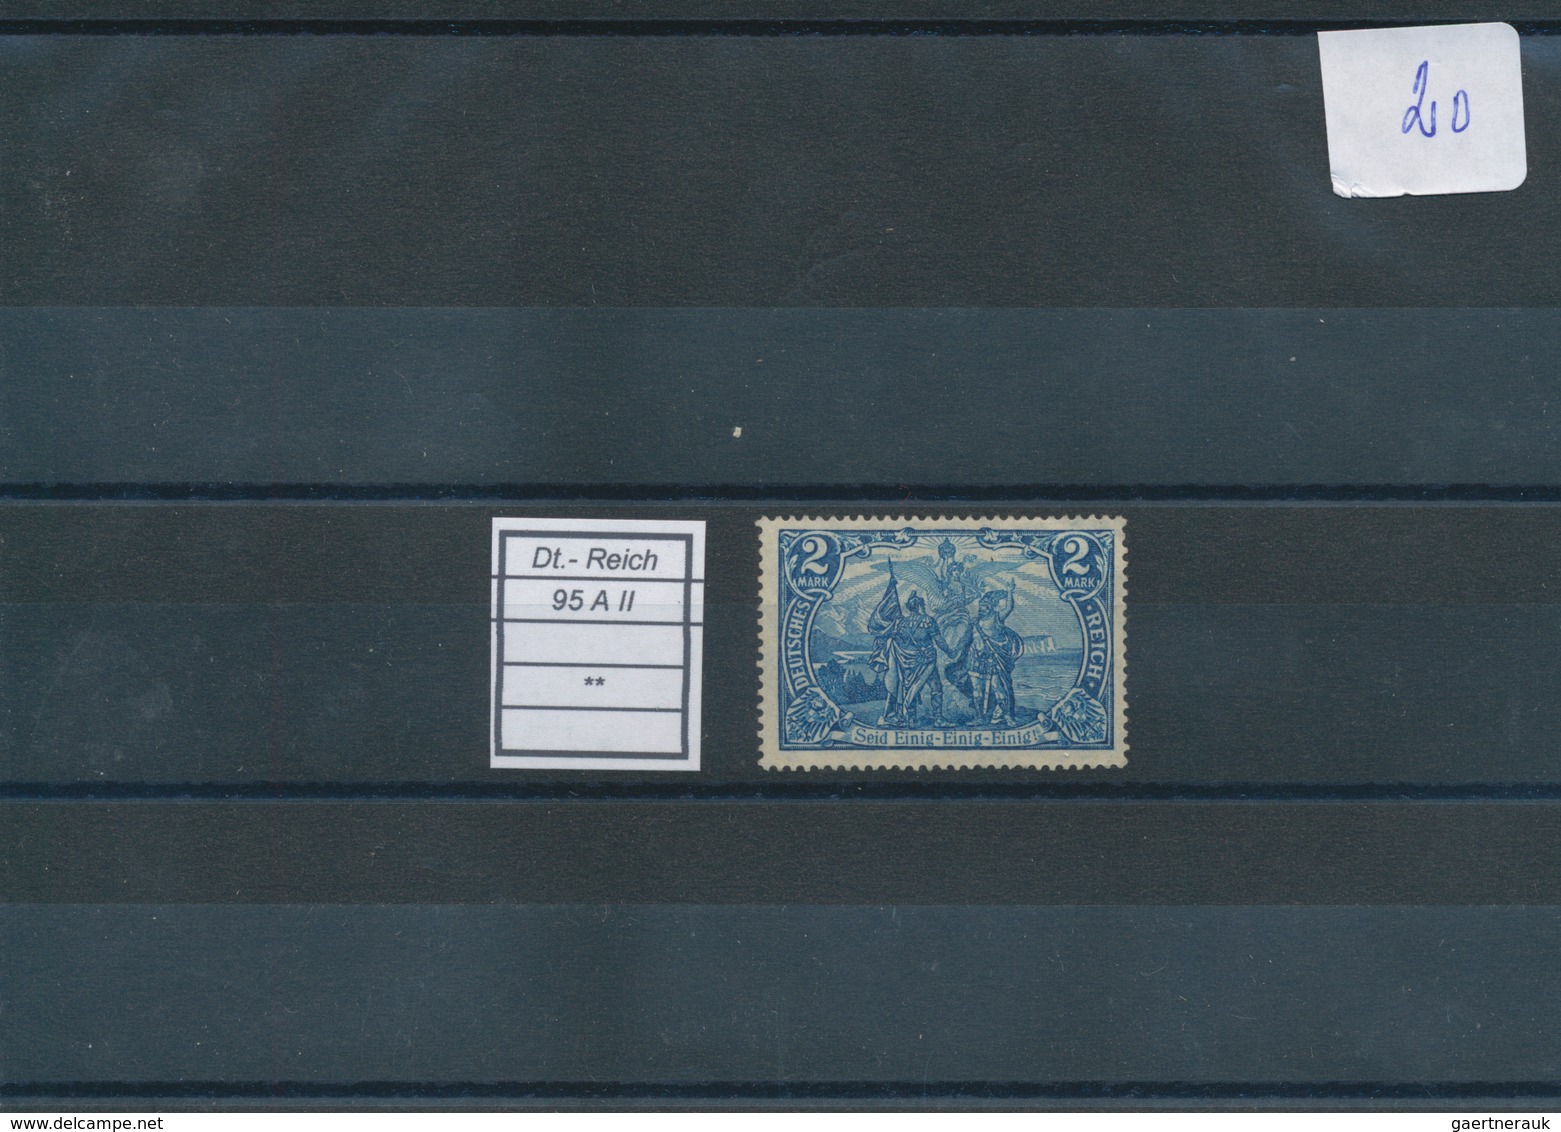 31005 Deutschland: 1850/1926, nettes Steckkartenlot ab Altdeutschland (unterschiedliche Erhaltung), ferner